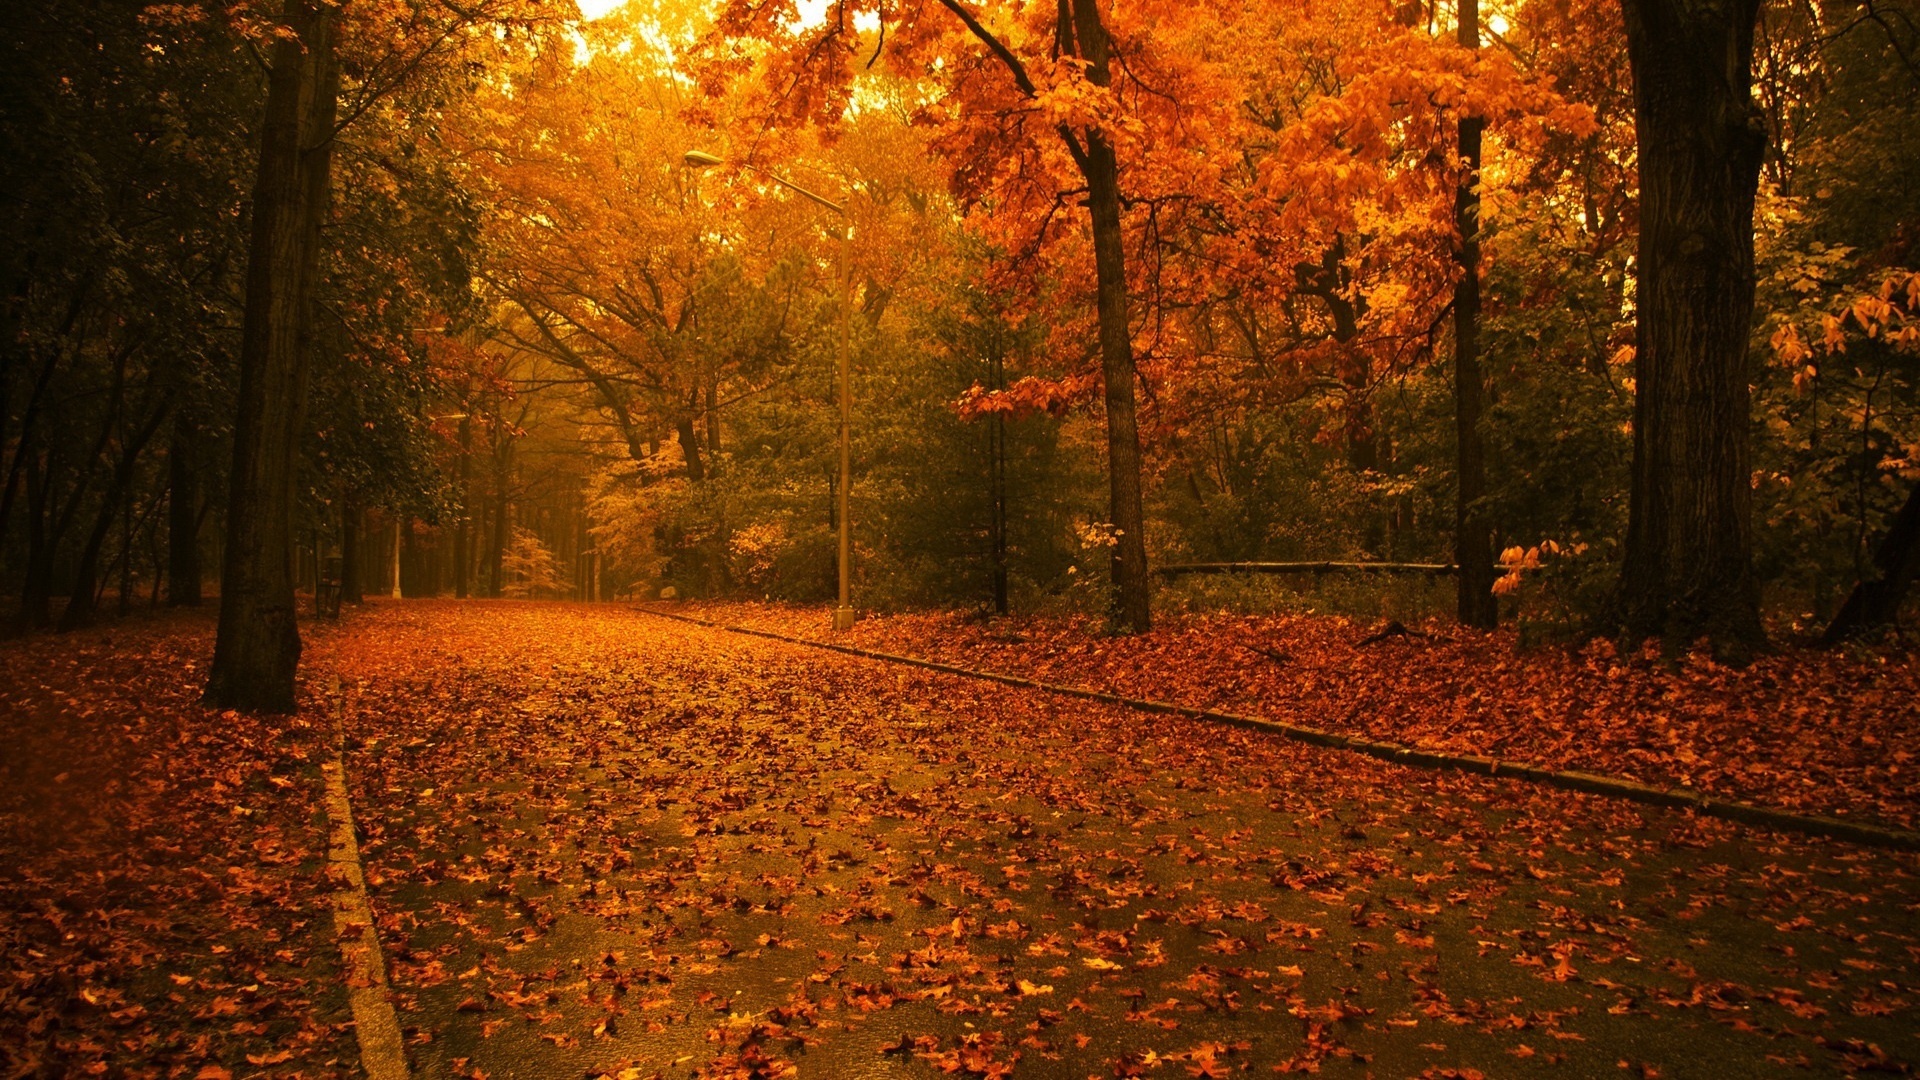 Autumn Trees in autumn